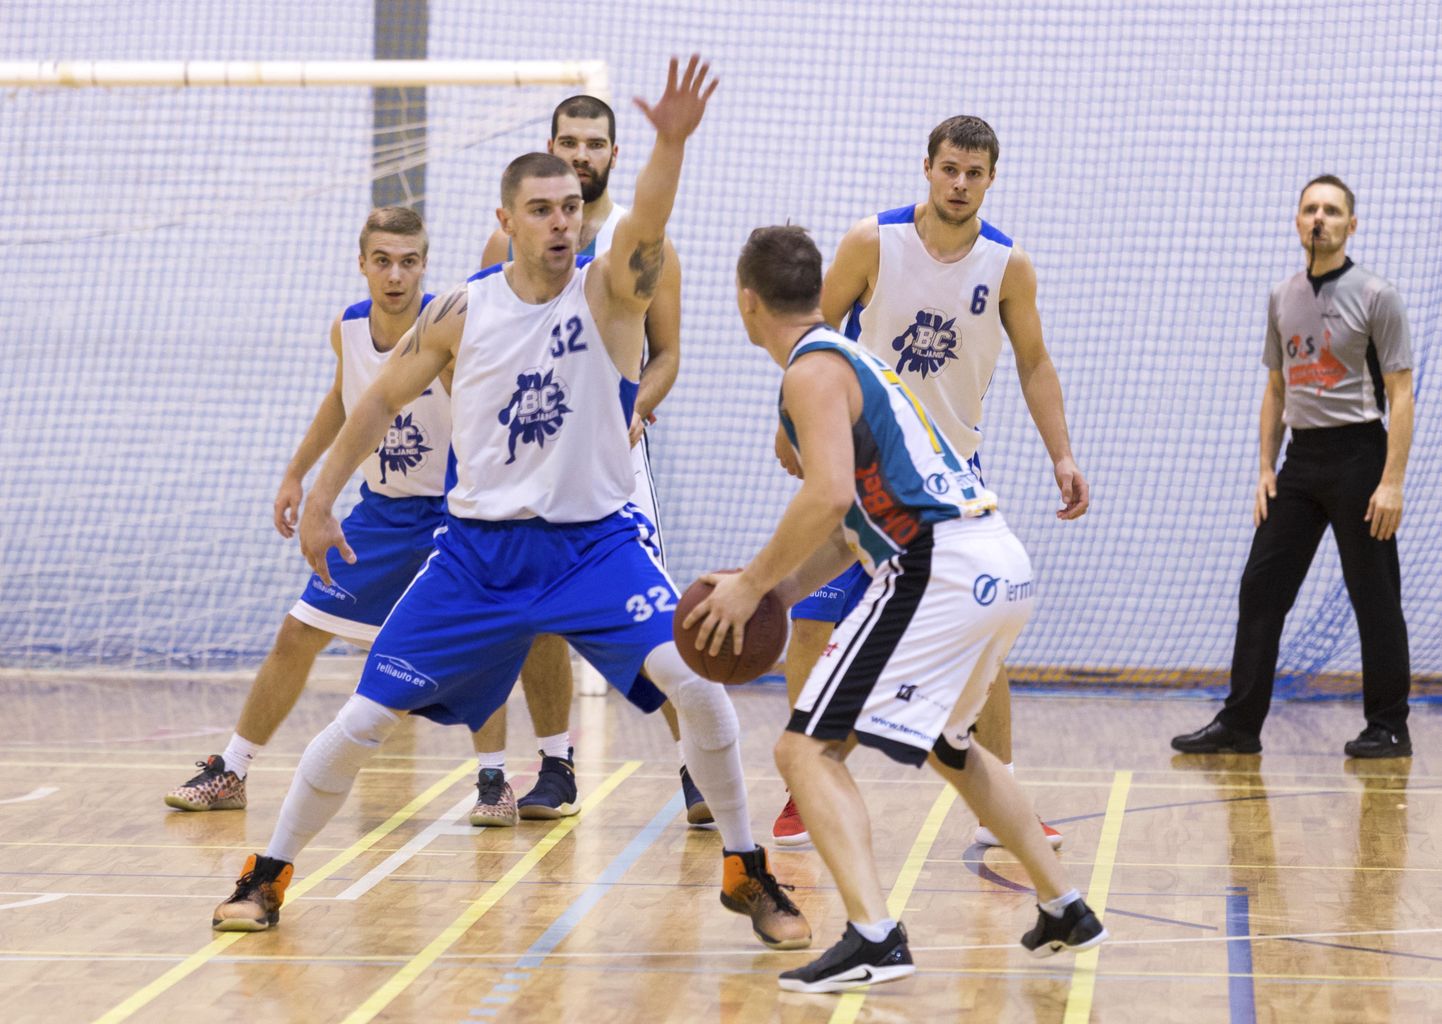 Viljandi korvpallimeeskond BC Viljandi / telliauto.ee meeskond tagas endale õiguse osaleda meistrivõistluste teise liiga nelja tugevama finaalturniiril.